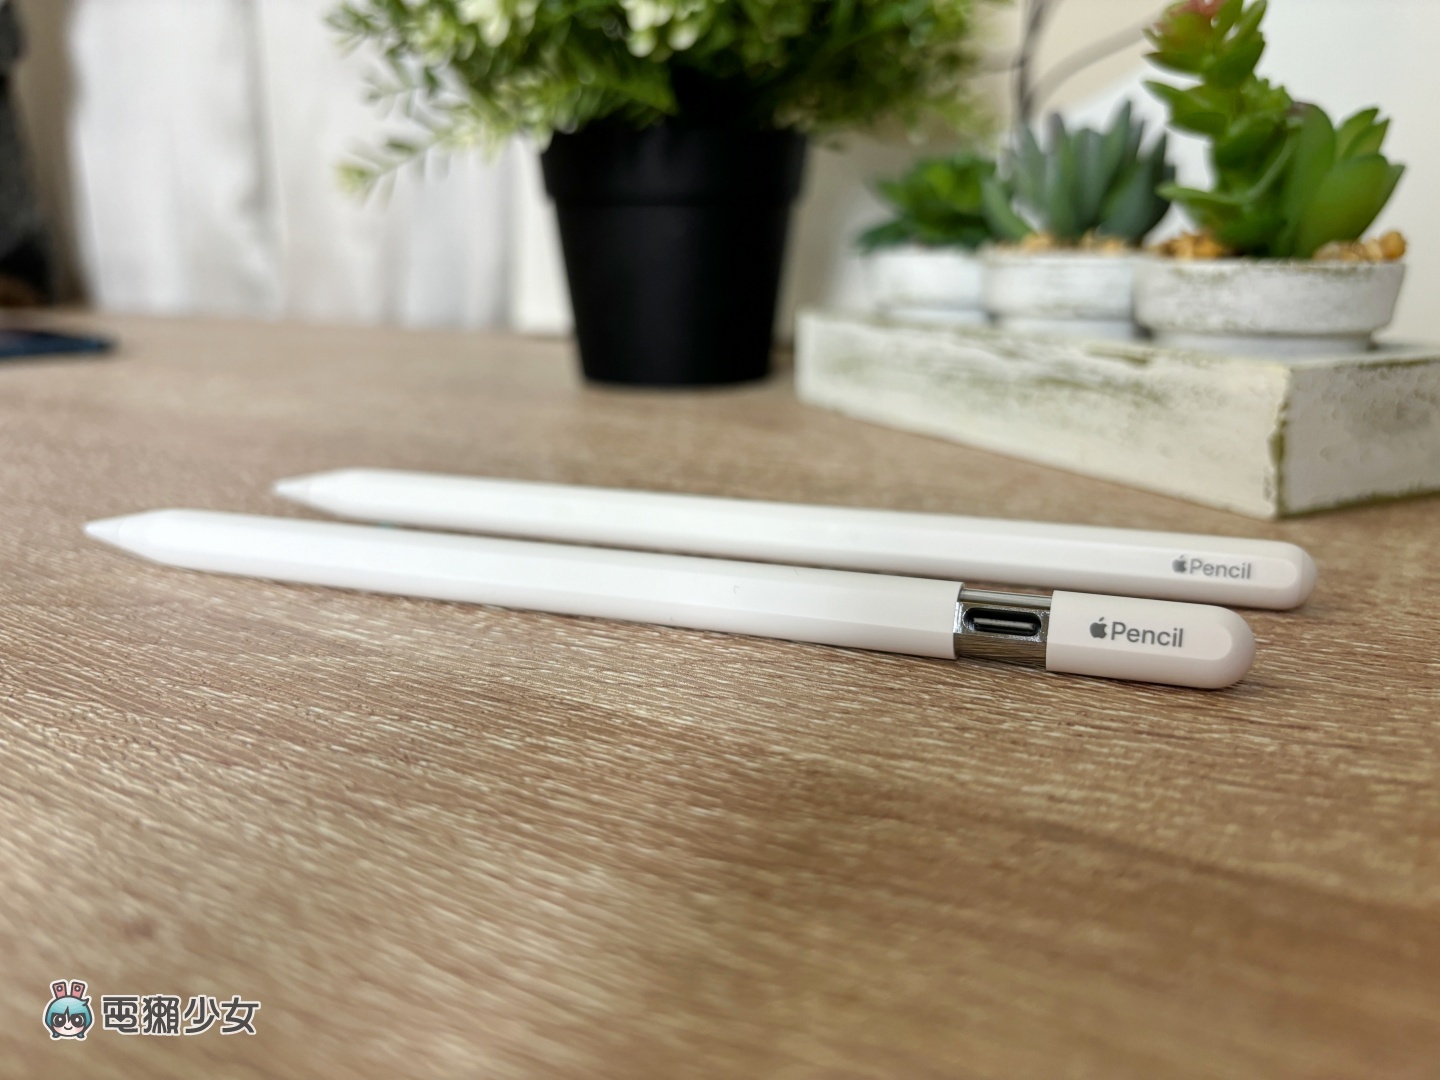 開箱｜平價版的 Apple Pencil 適合誰？值得入手嗎？Apple Pencil（USB-C）優缺點整理